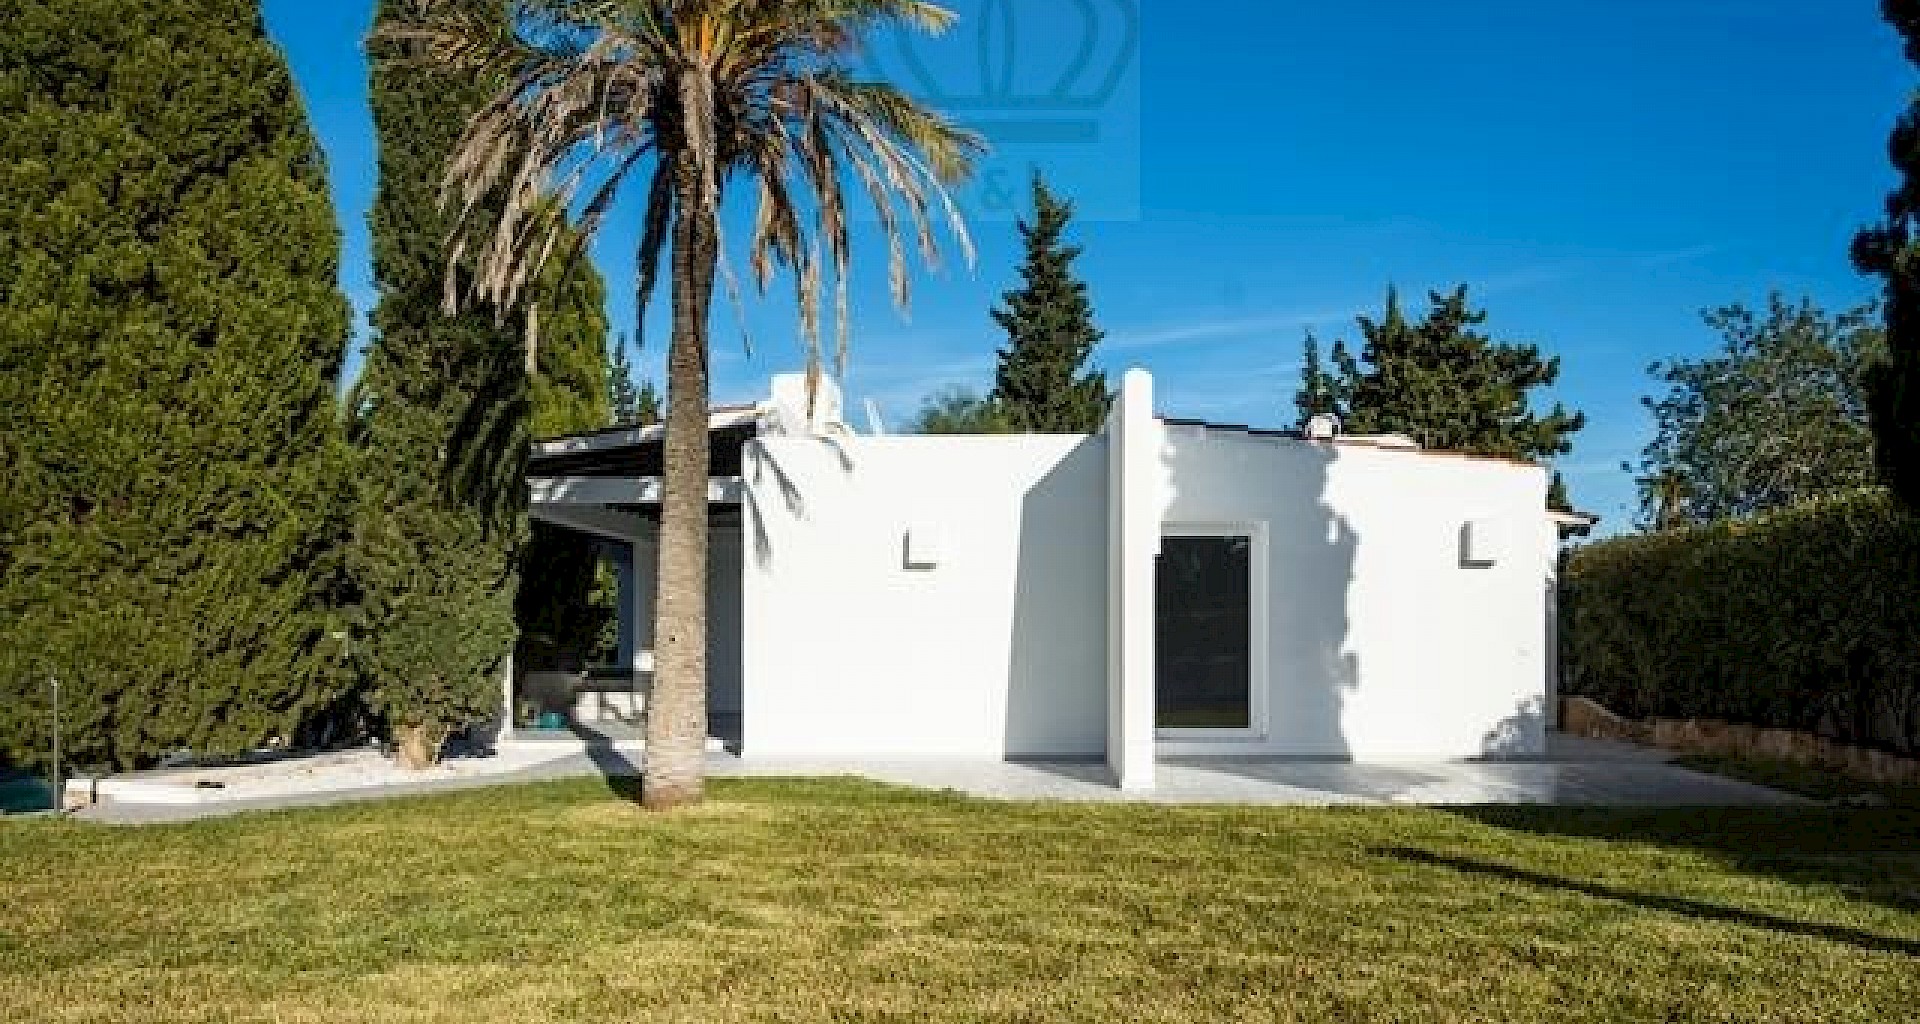 KROHN & LUEDEMANN Komplett renoviertes Haus auf Ibiza mit Pool und viel Privatsphäre Benimussa (15)